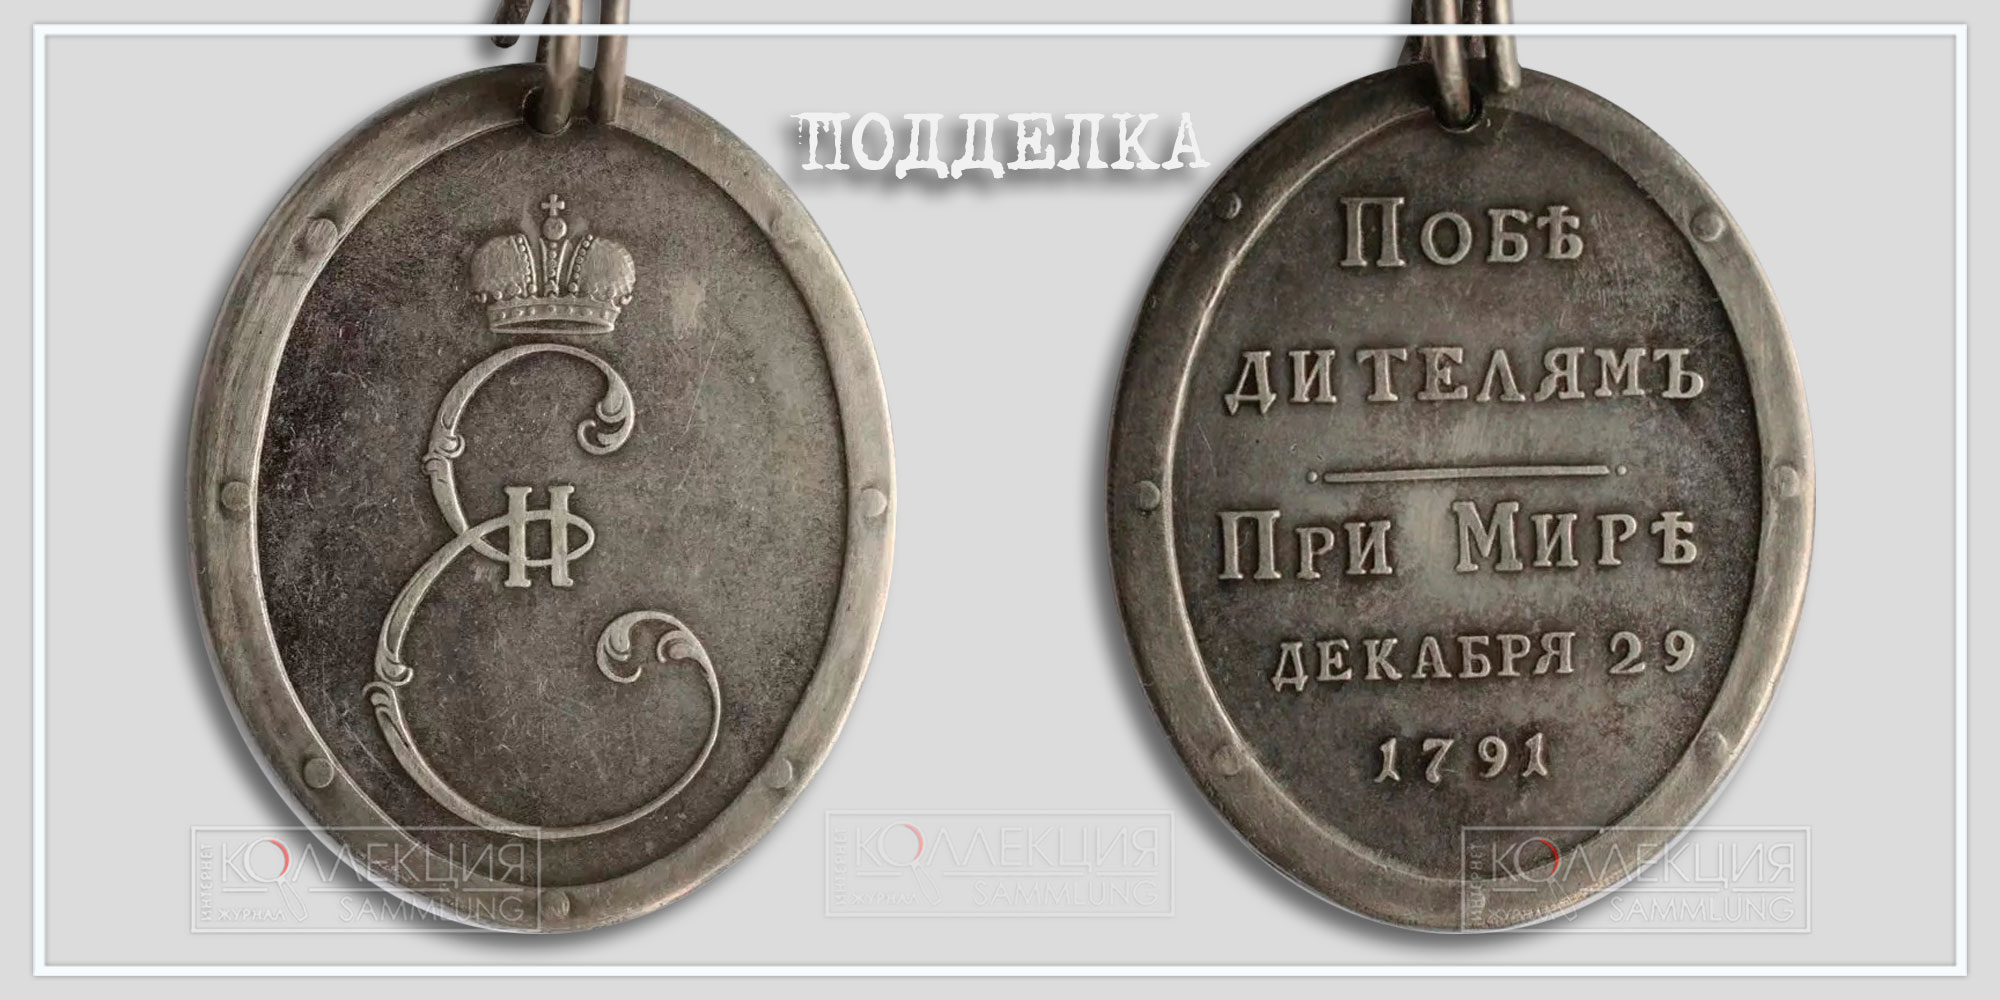 Медаль "Победителям при Мире 1791" Копия